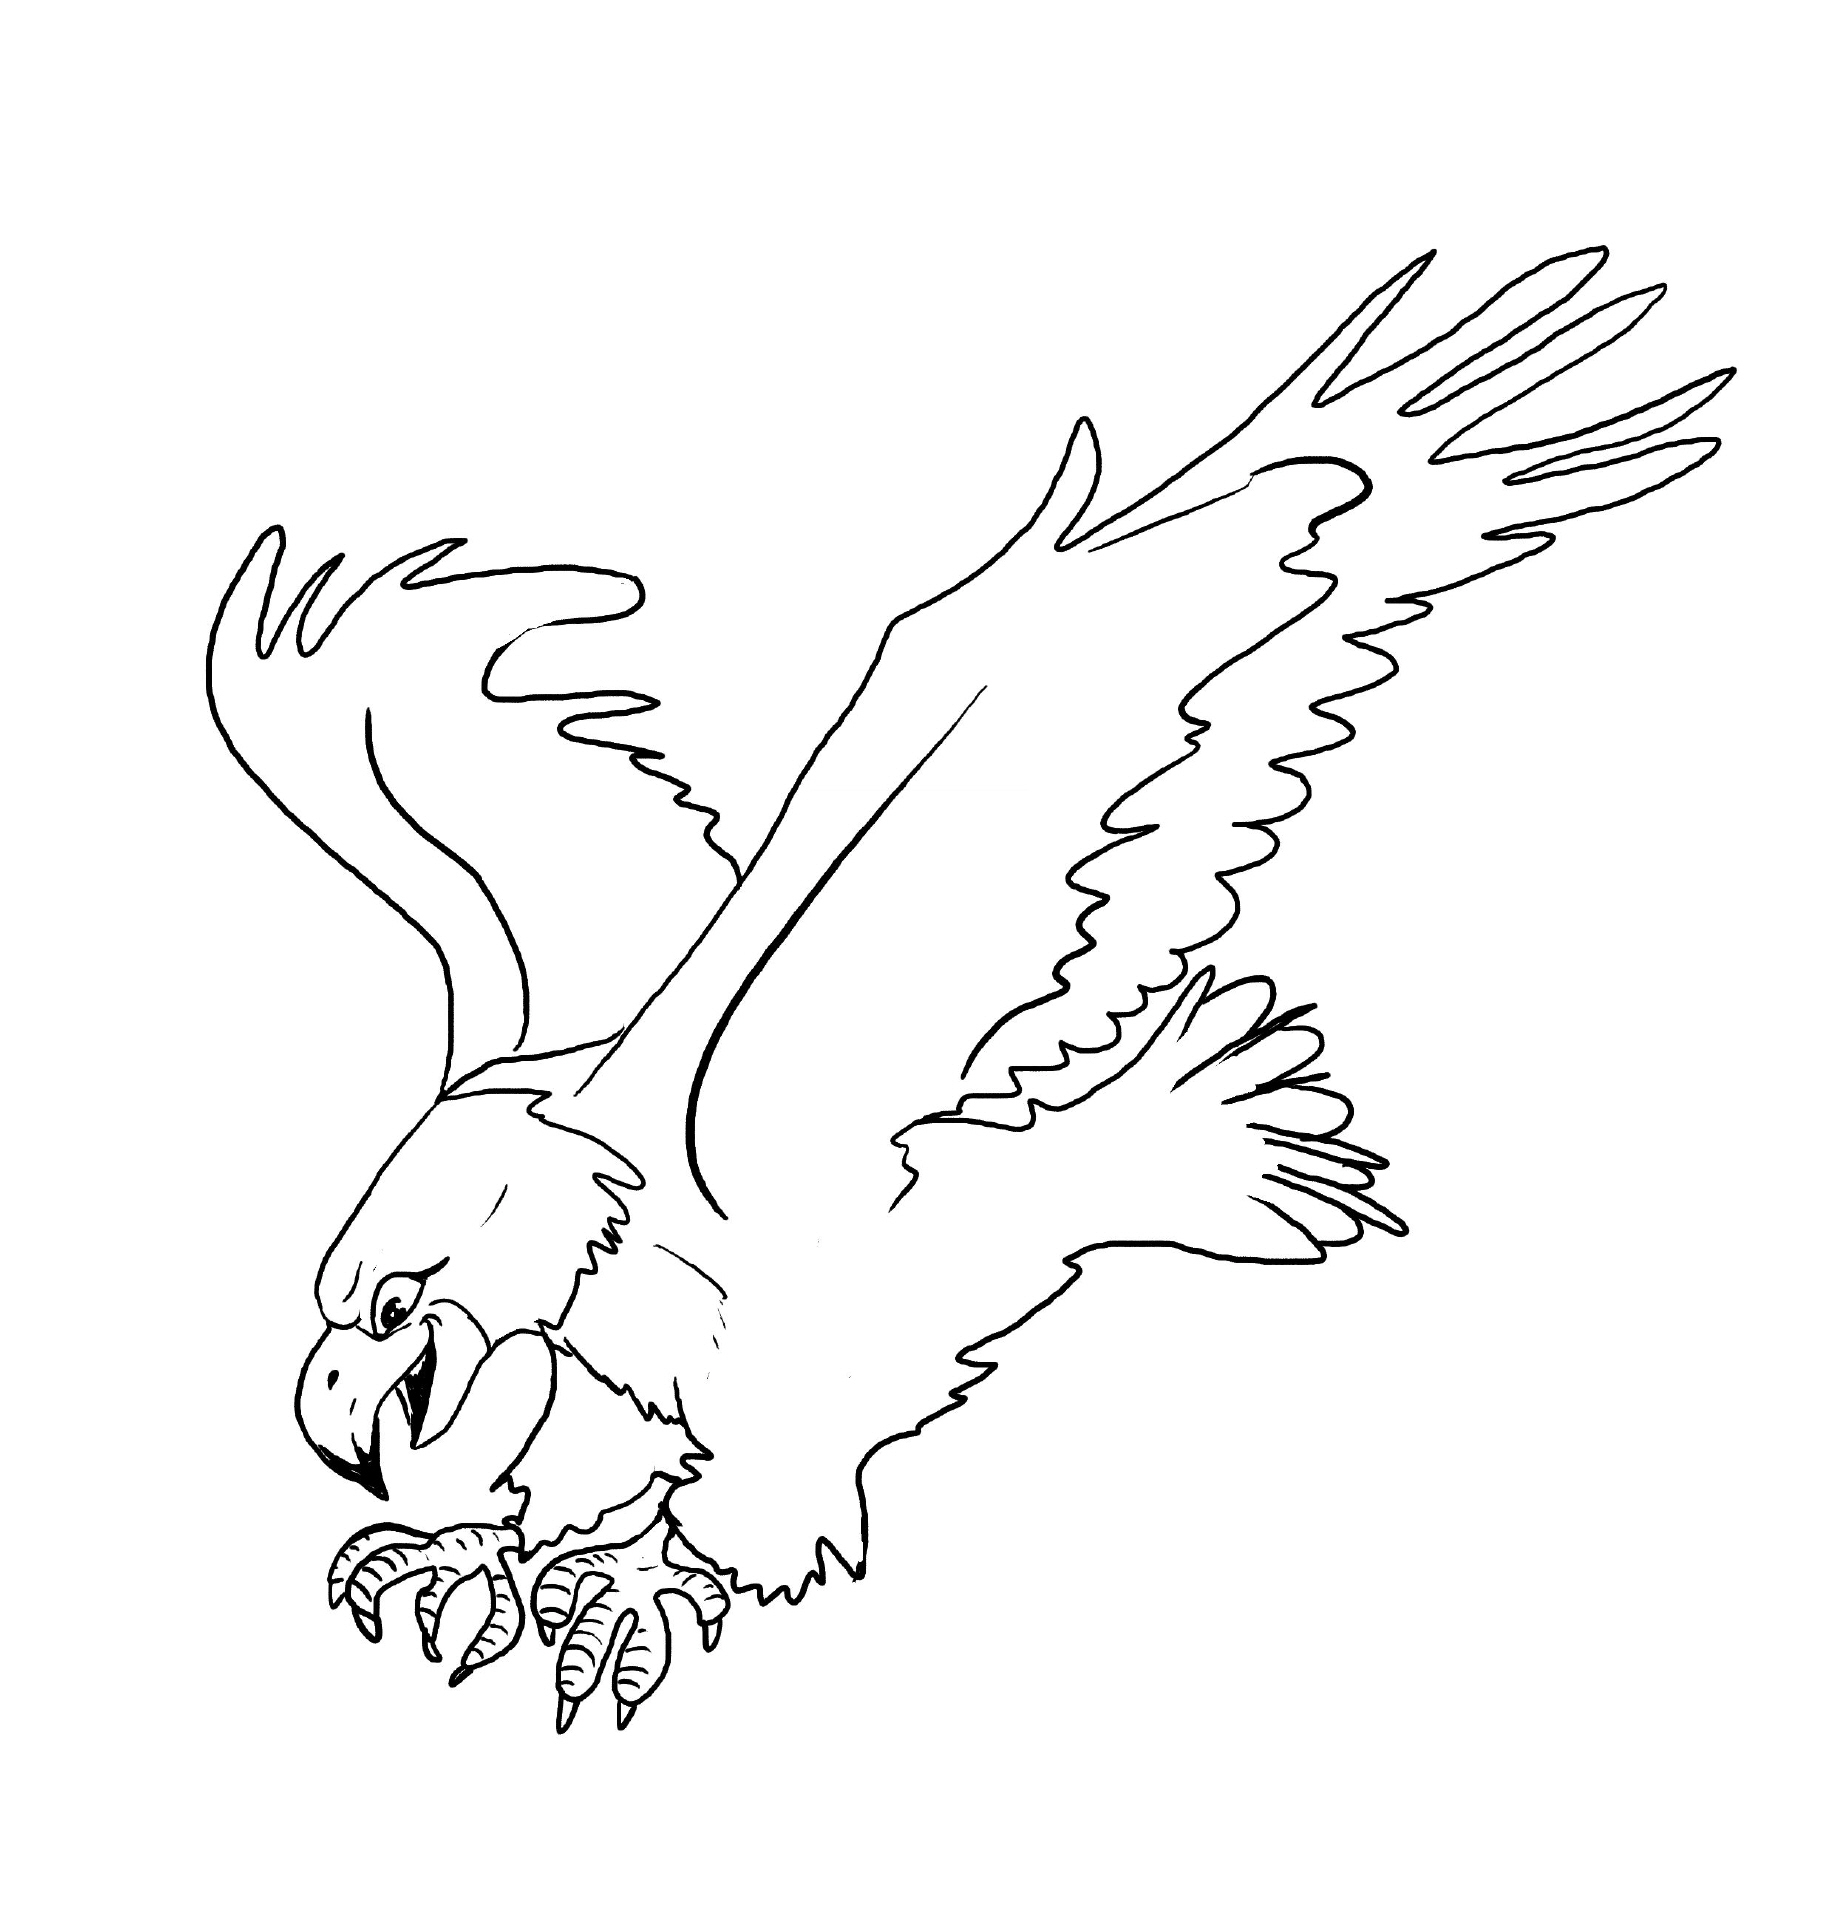 Adler coloring #12, Download drawings